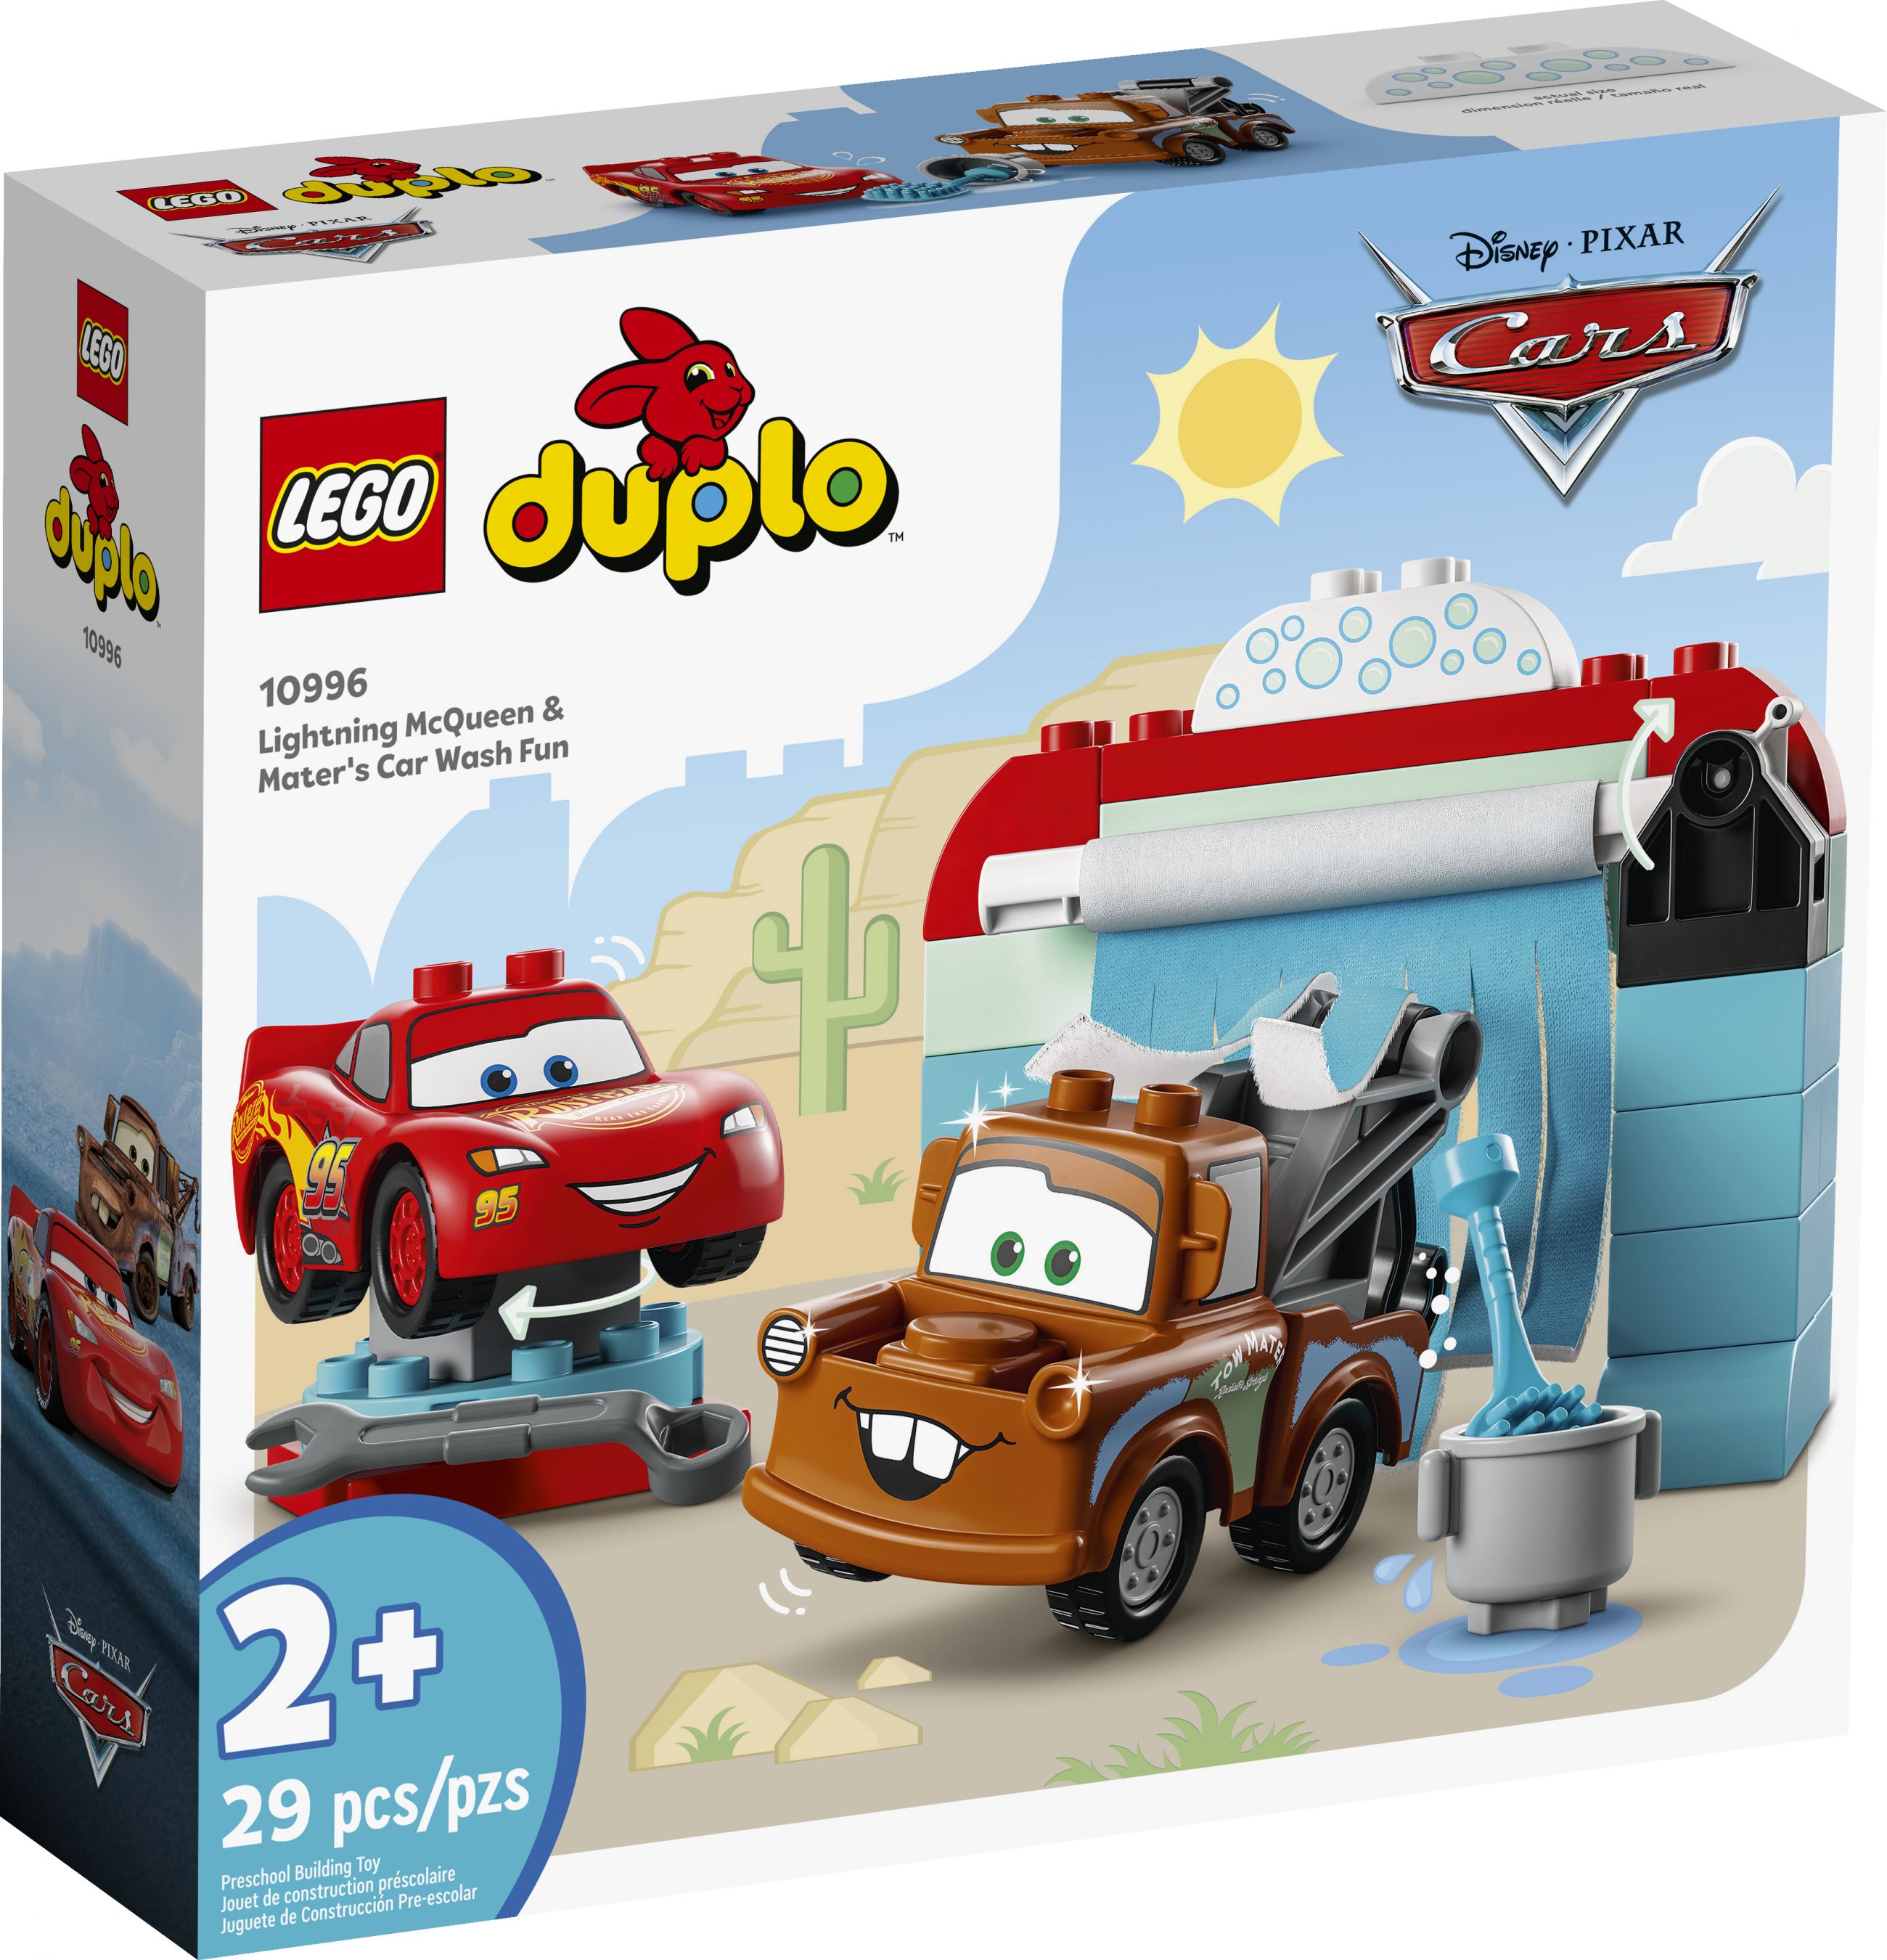 LEGO Duplo 10996 Lightning McQueen und Mater in der Waschanlage LEGO_10996_Box1_v39.jpg